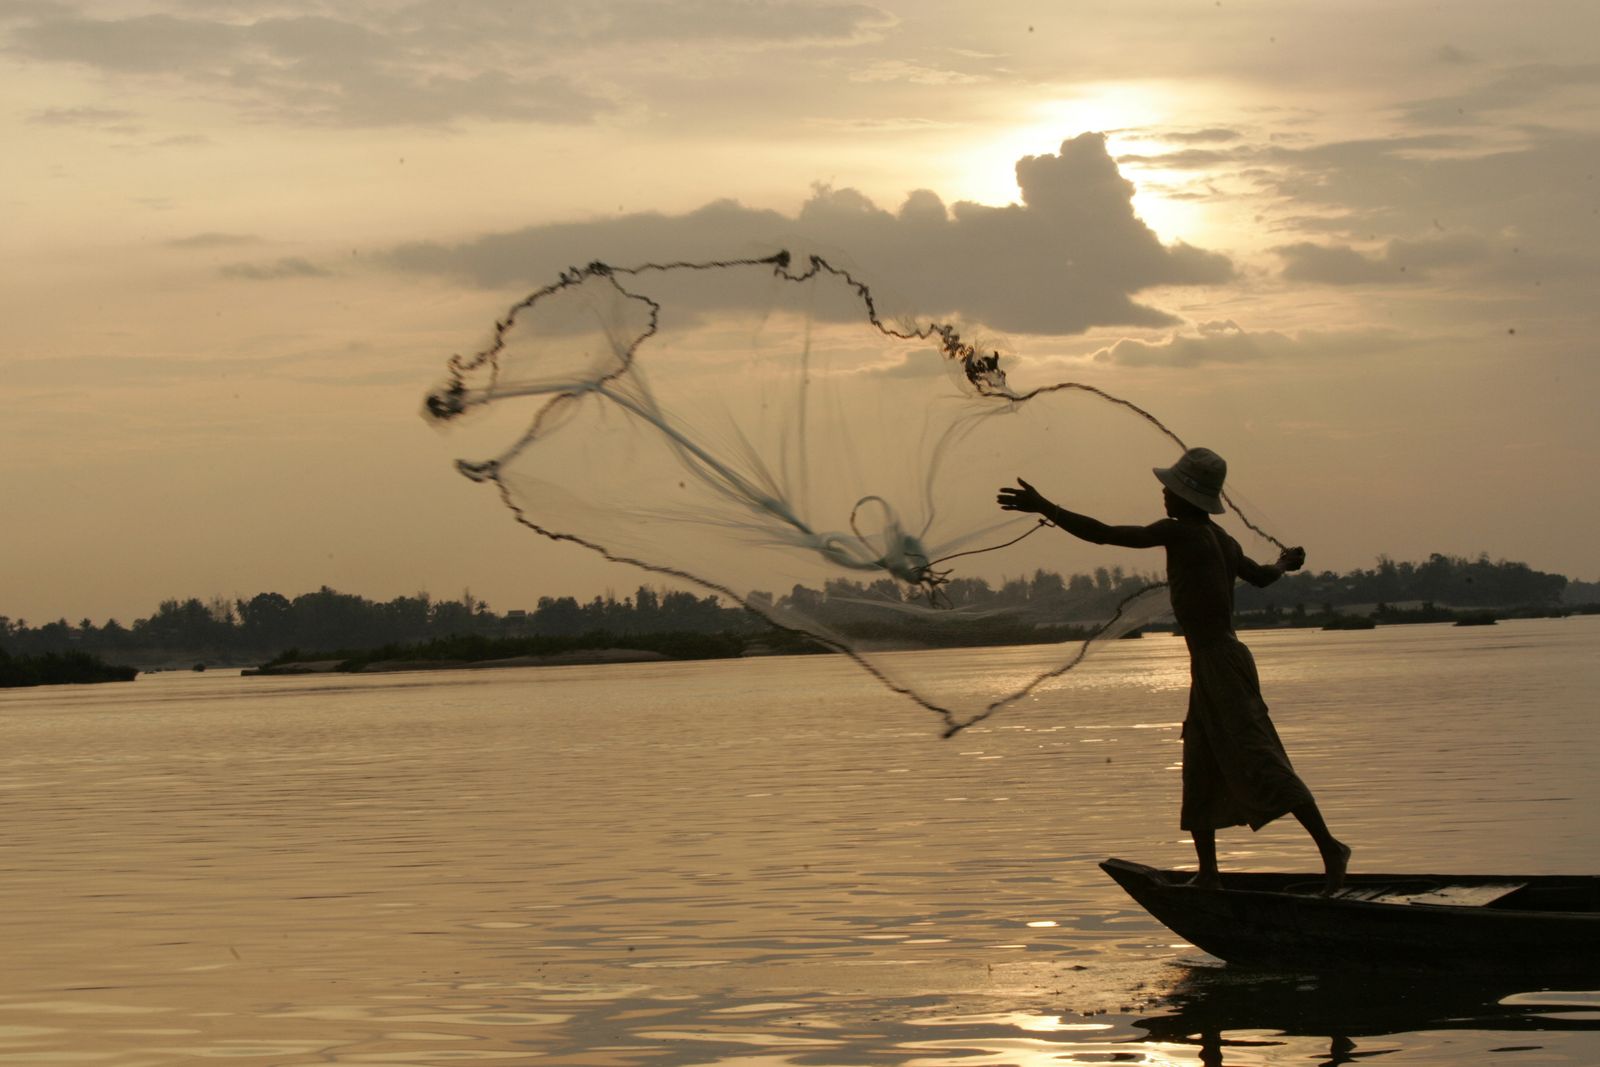 صياد يلقي بشبكة على نهر ميكونج موطن دلافين إيراوادي، حيث سنت الحكومة قراراً بمضاعفة عقوبة الصيد بالشباك، في قرية كامبي في مقاطعة كراتيي شمال شرق كمبوديا - 24 مارس 2007 - Reuters